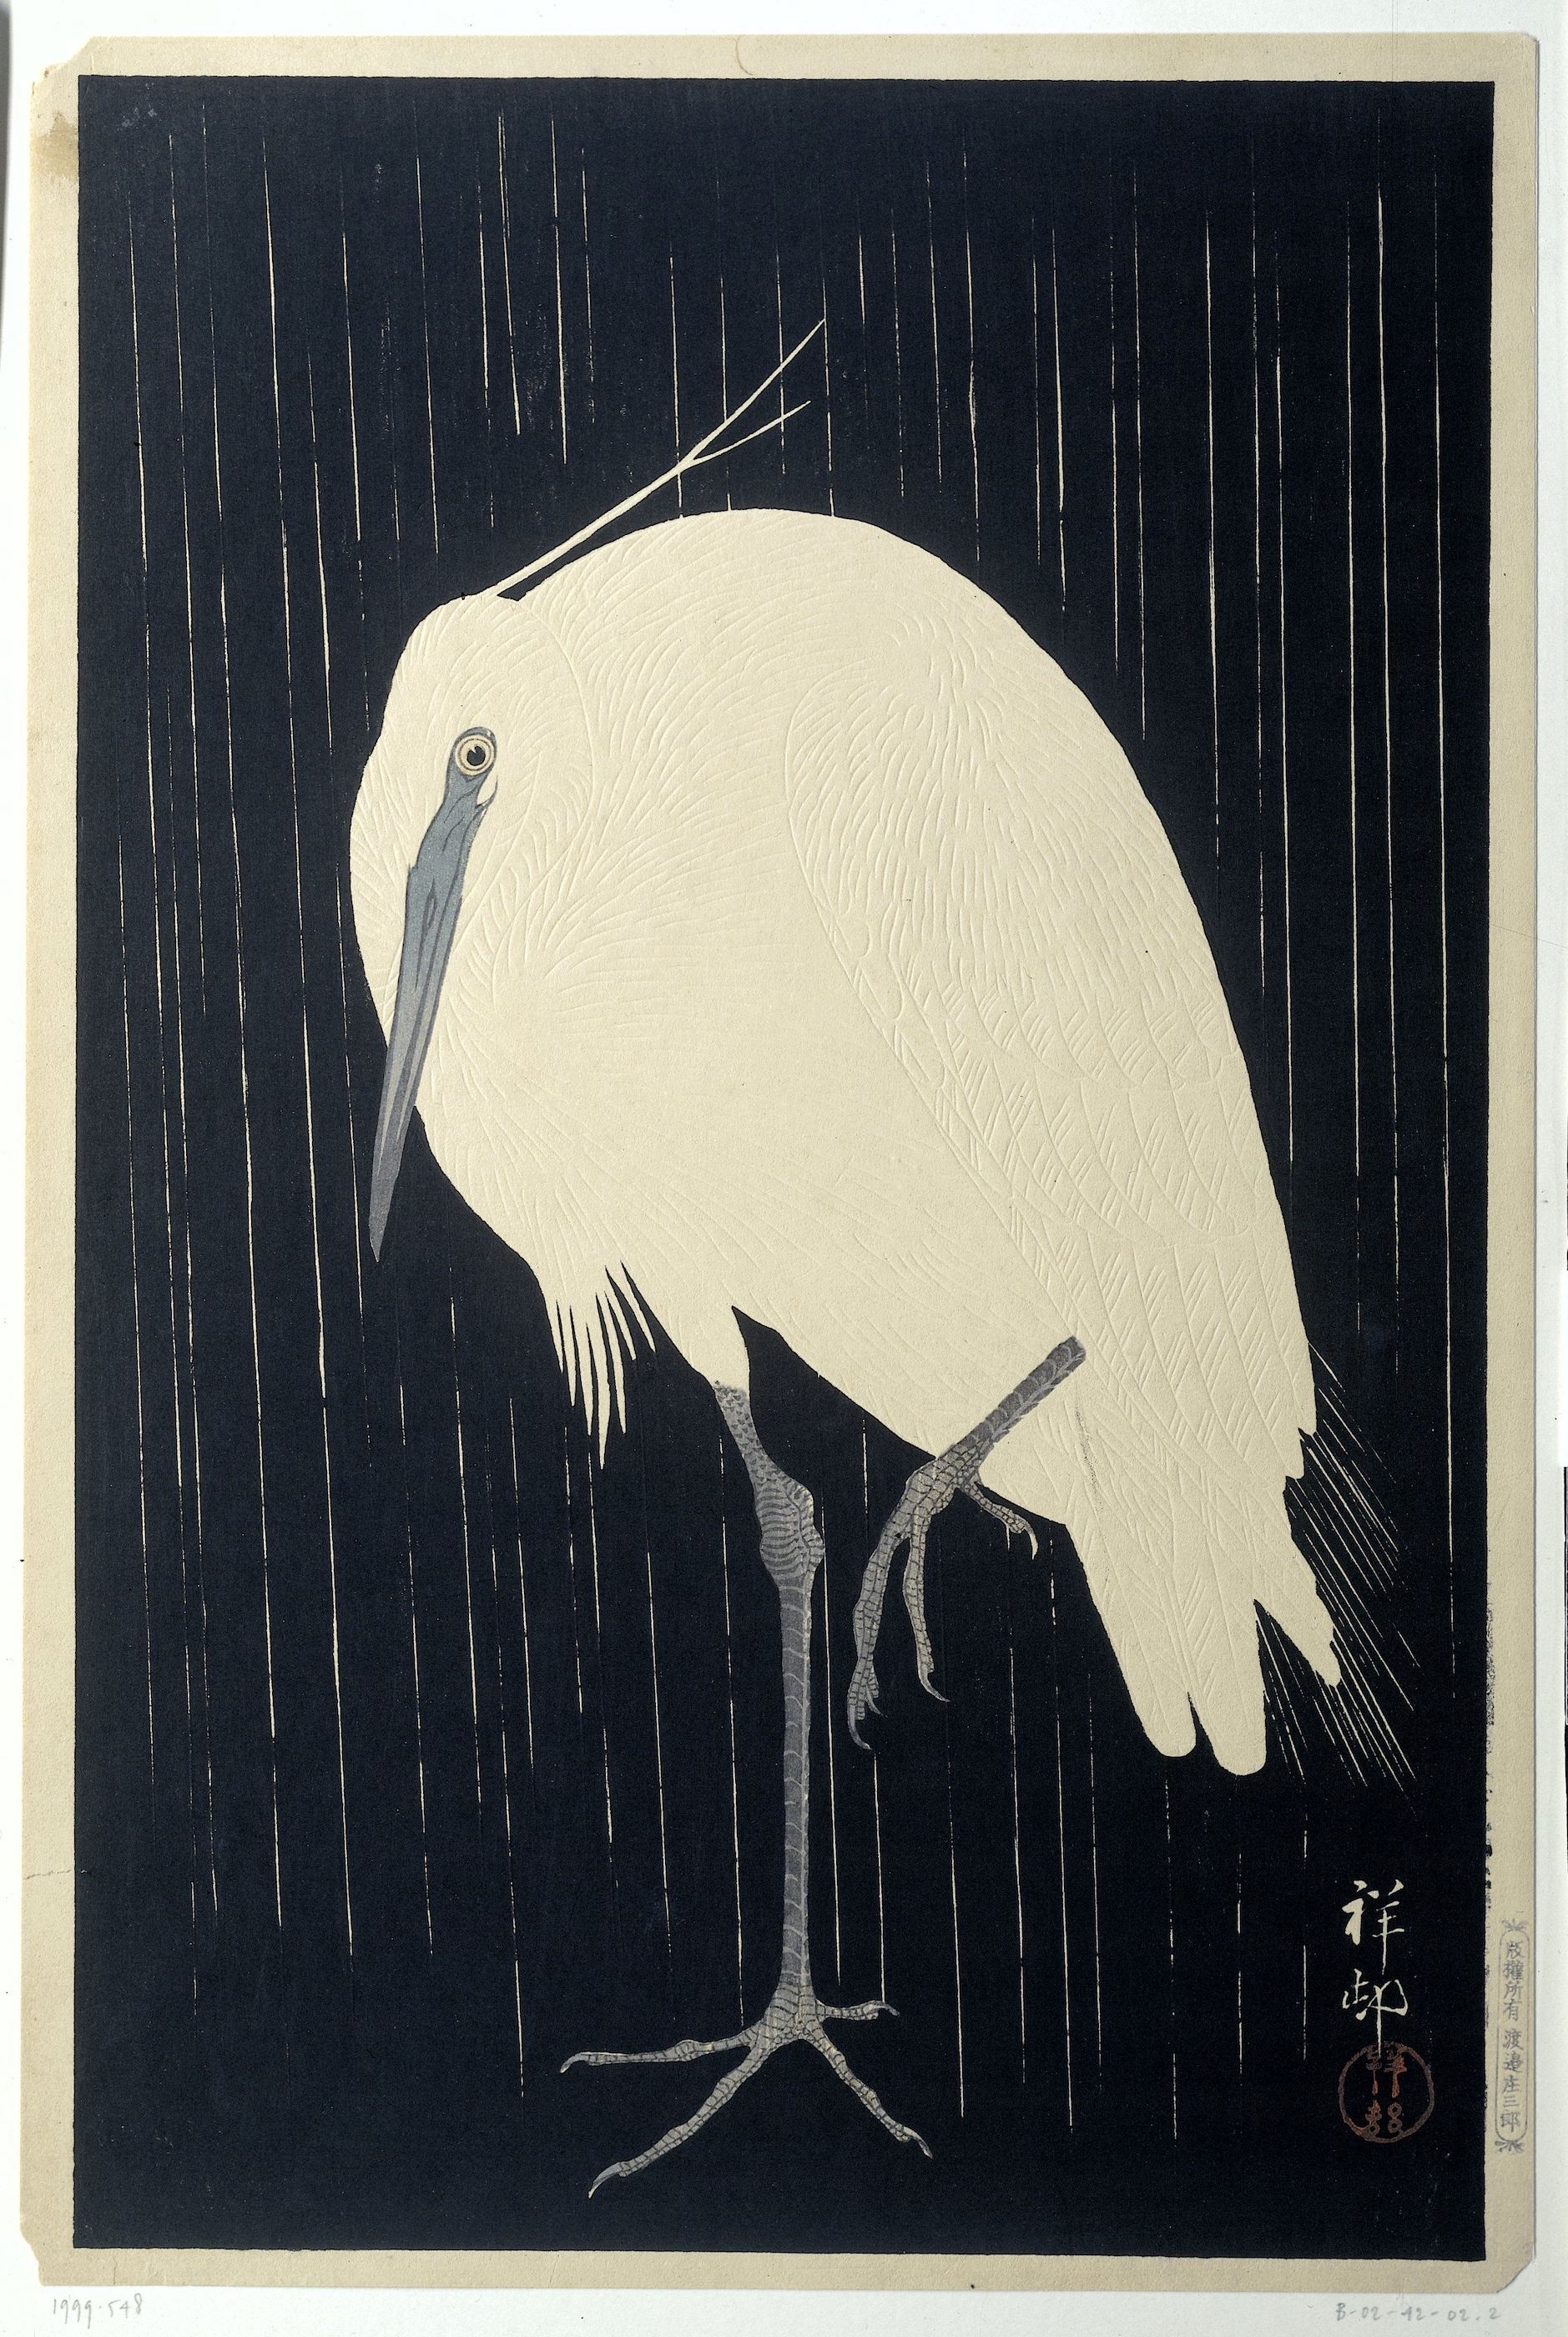 雨の白鷺 by Ohara Koson - 1928年 - 36.3 × 24.1 cm 